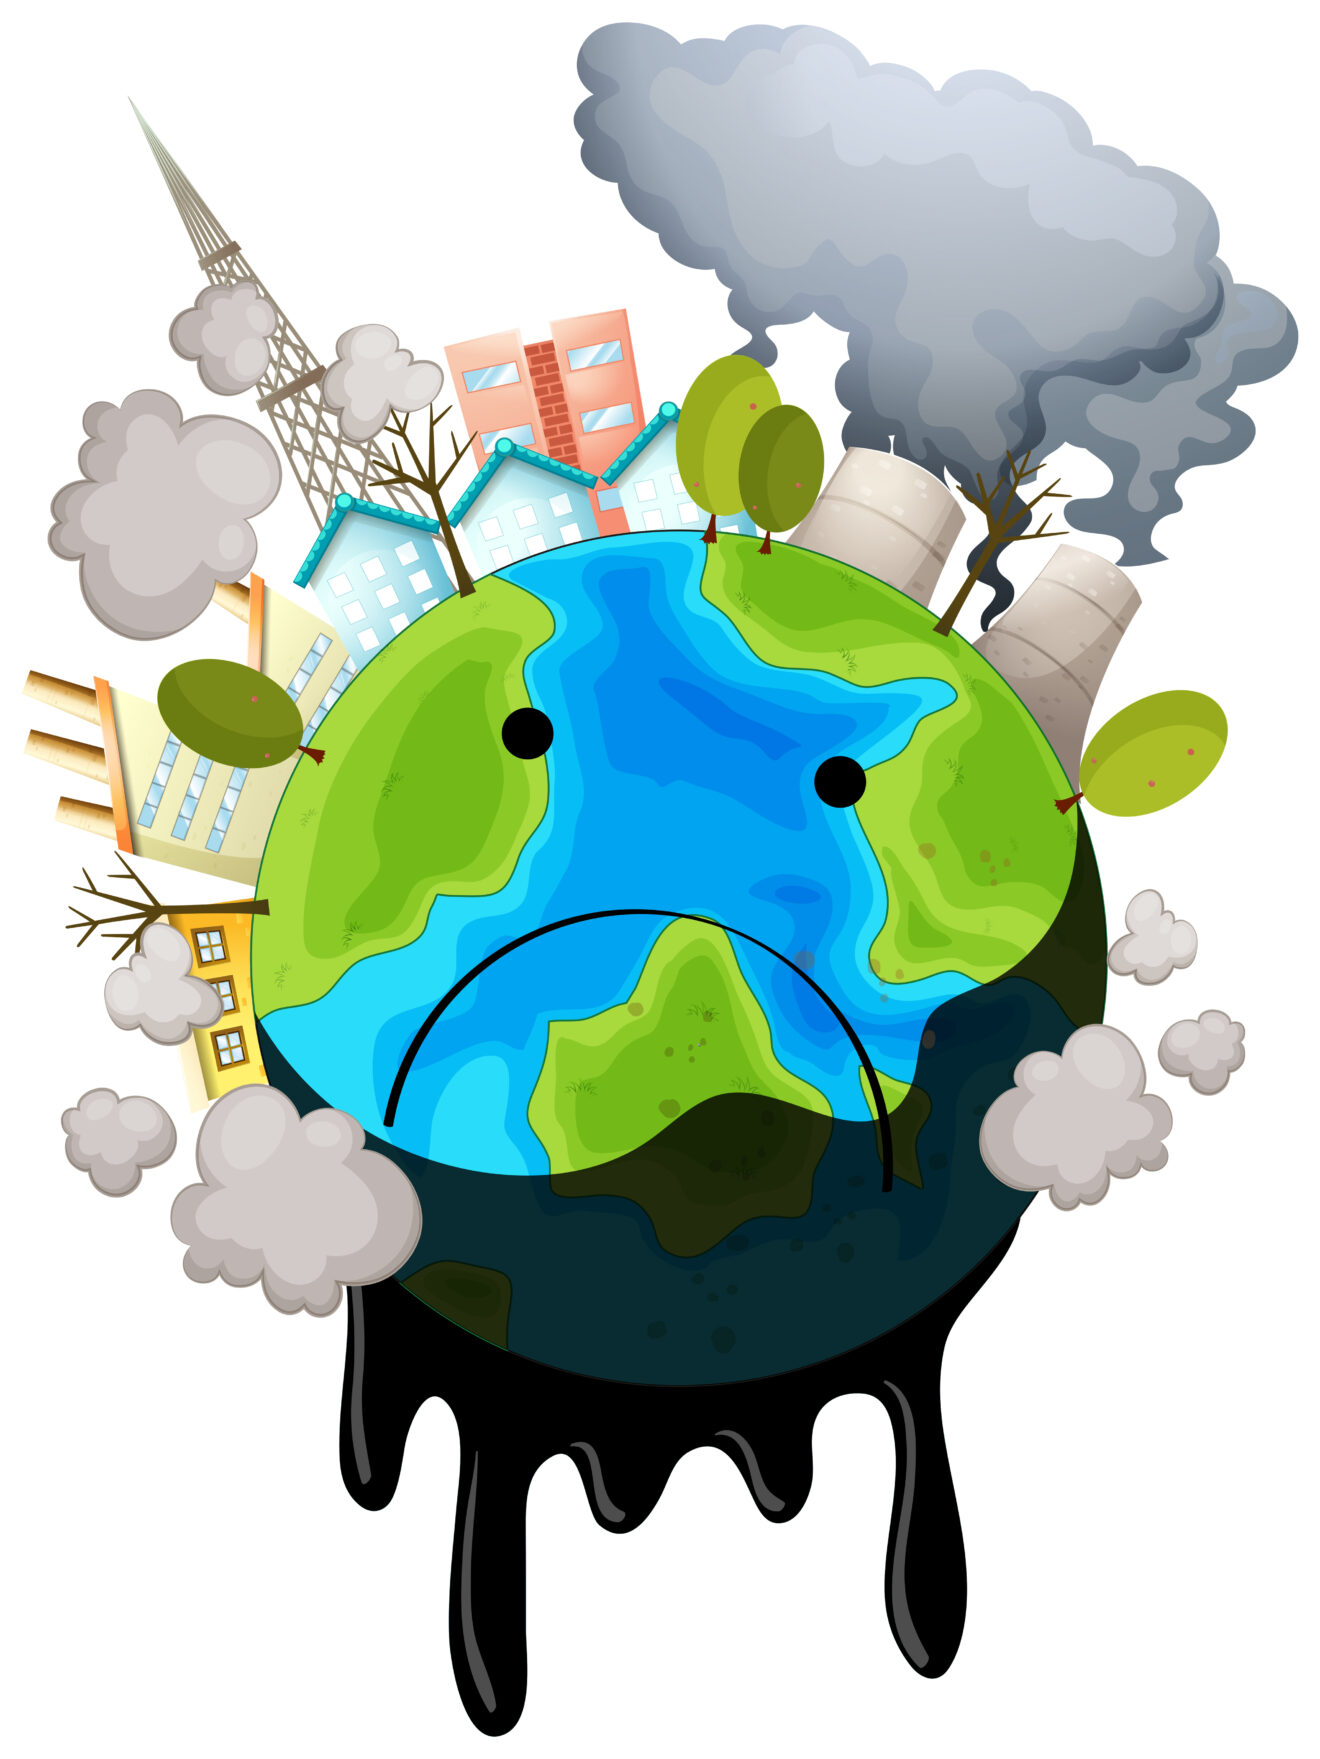 Pollution atmosphérique : alerte de niveau 1